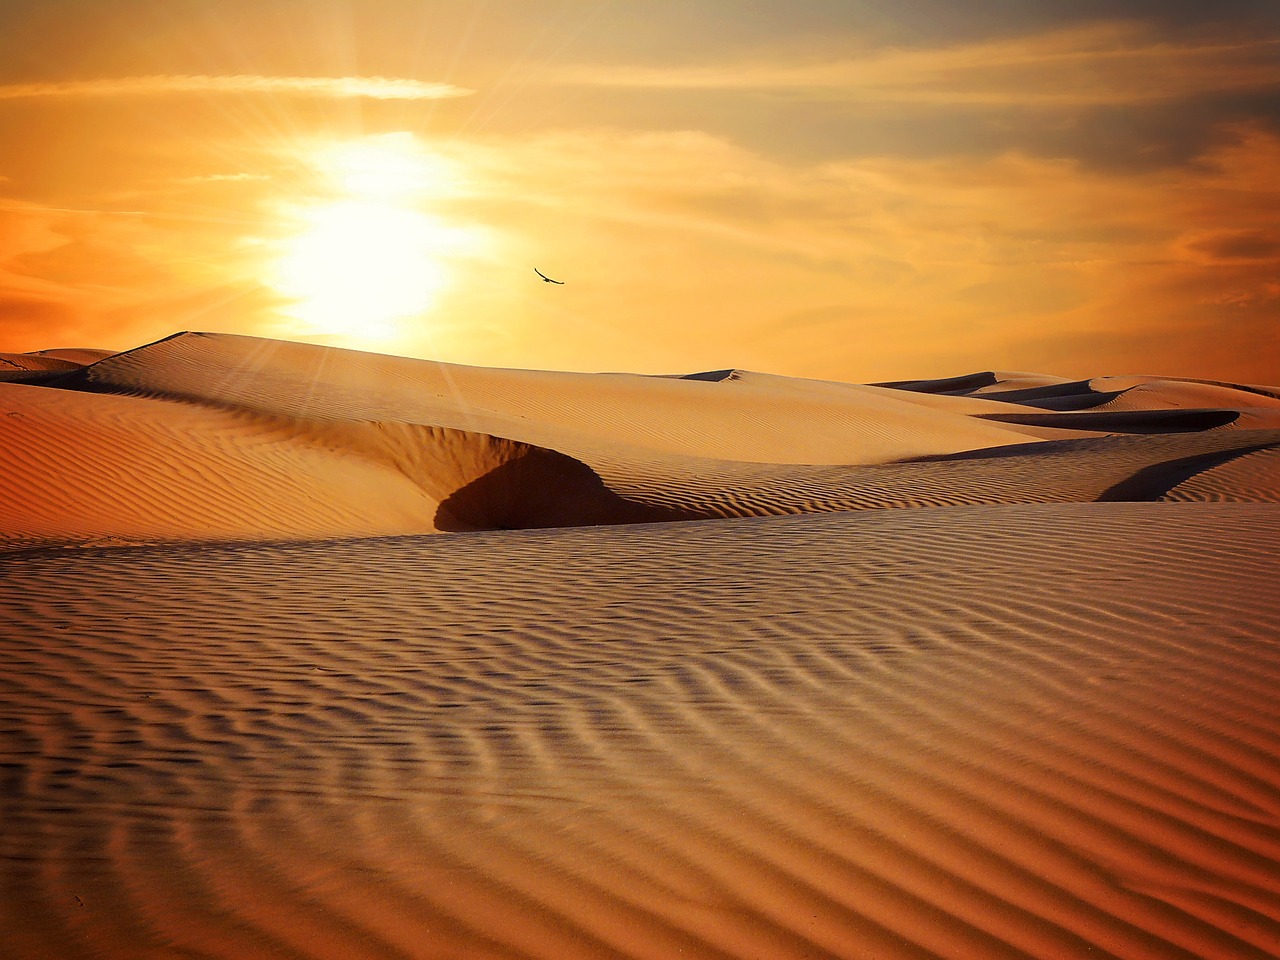 Wüste; Quelle: https://pixabay.com/de/photos/w%c3%bcste-sand-unfruchtbar-trocken-790640/